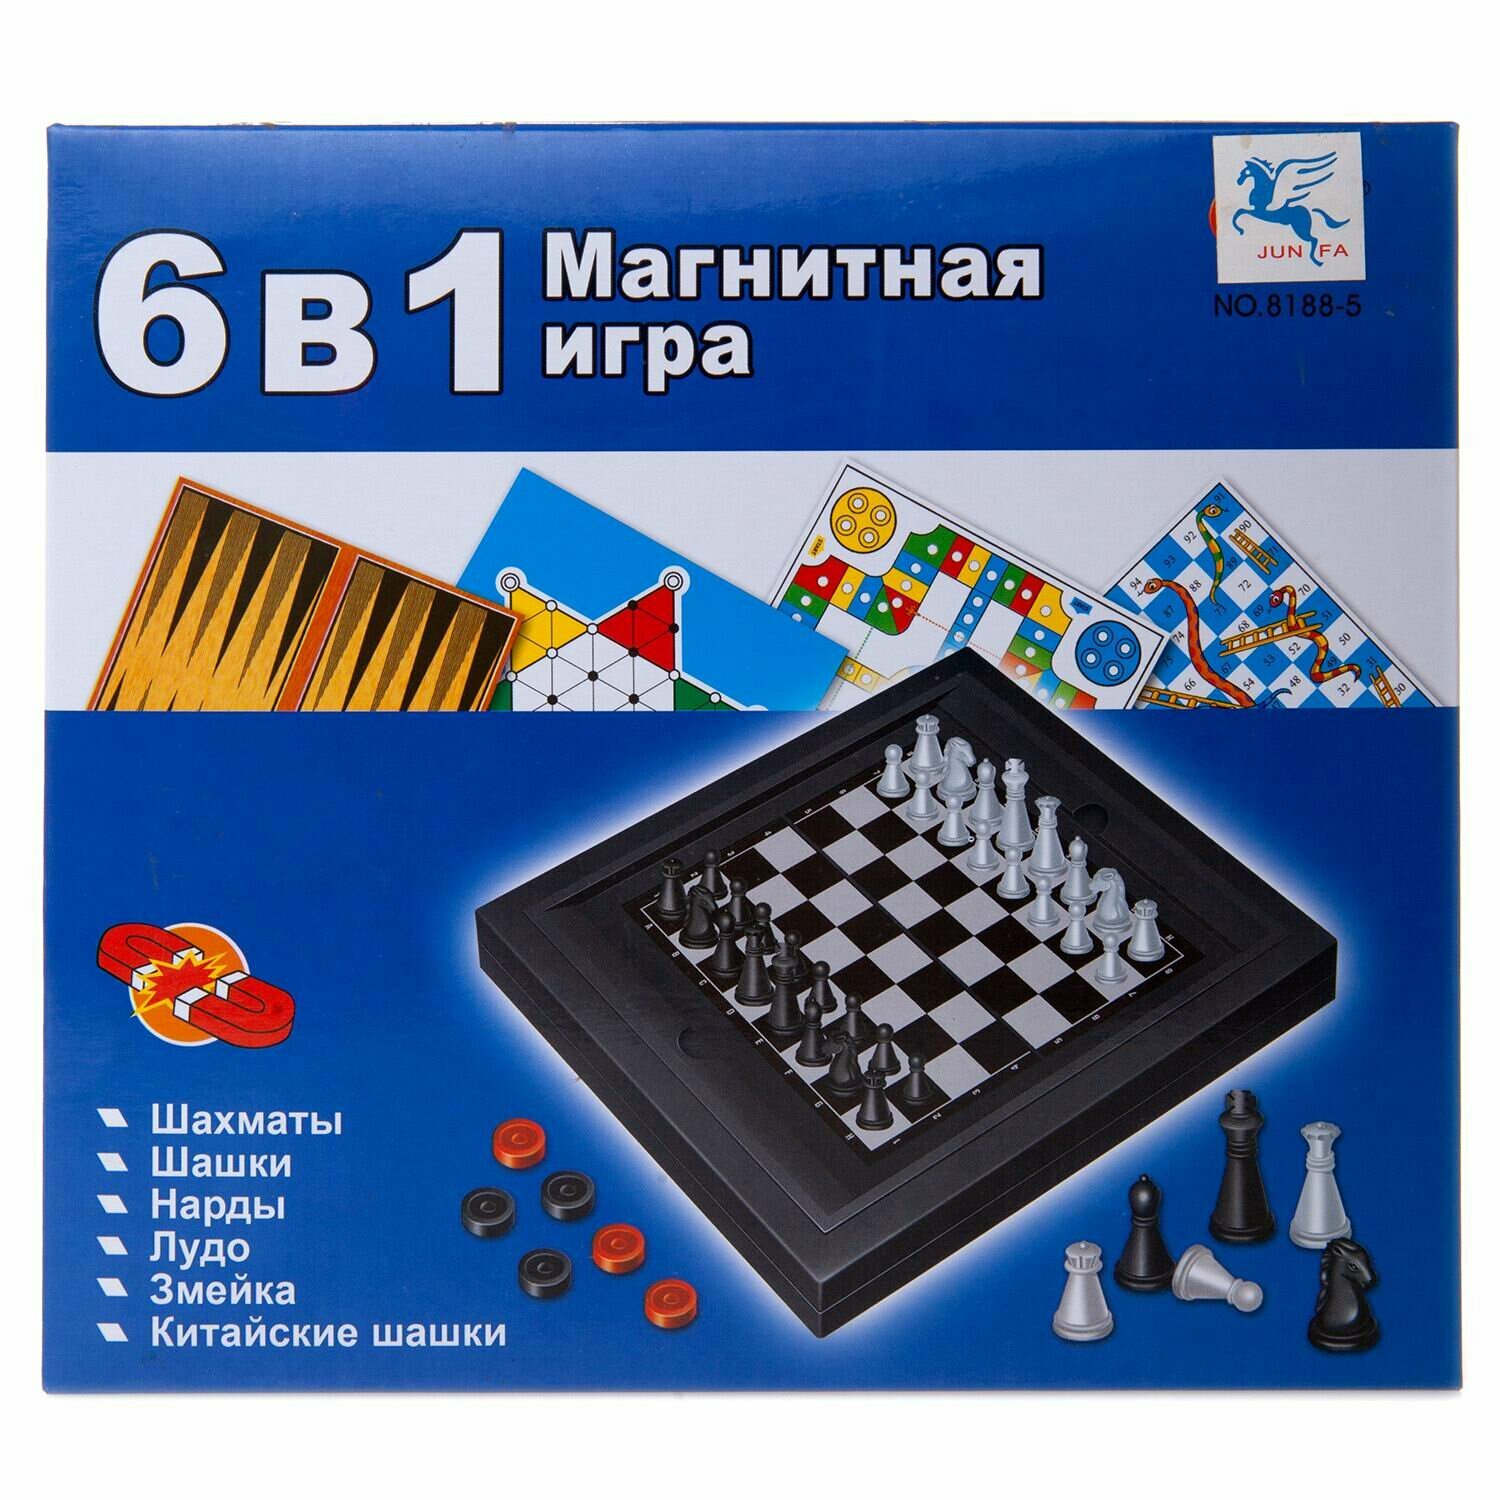 Игра настольная магнитная 6в1 (шахматы, шашки, нарды, лудо, змейка, китайские шашки) 8188-5